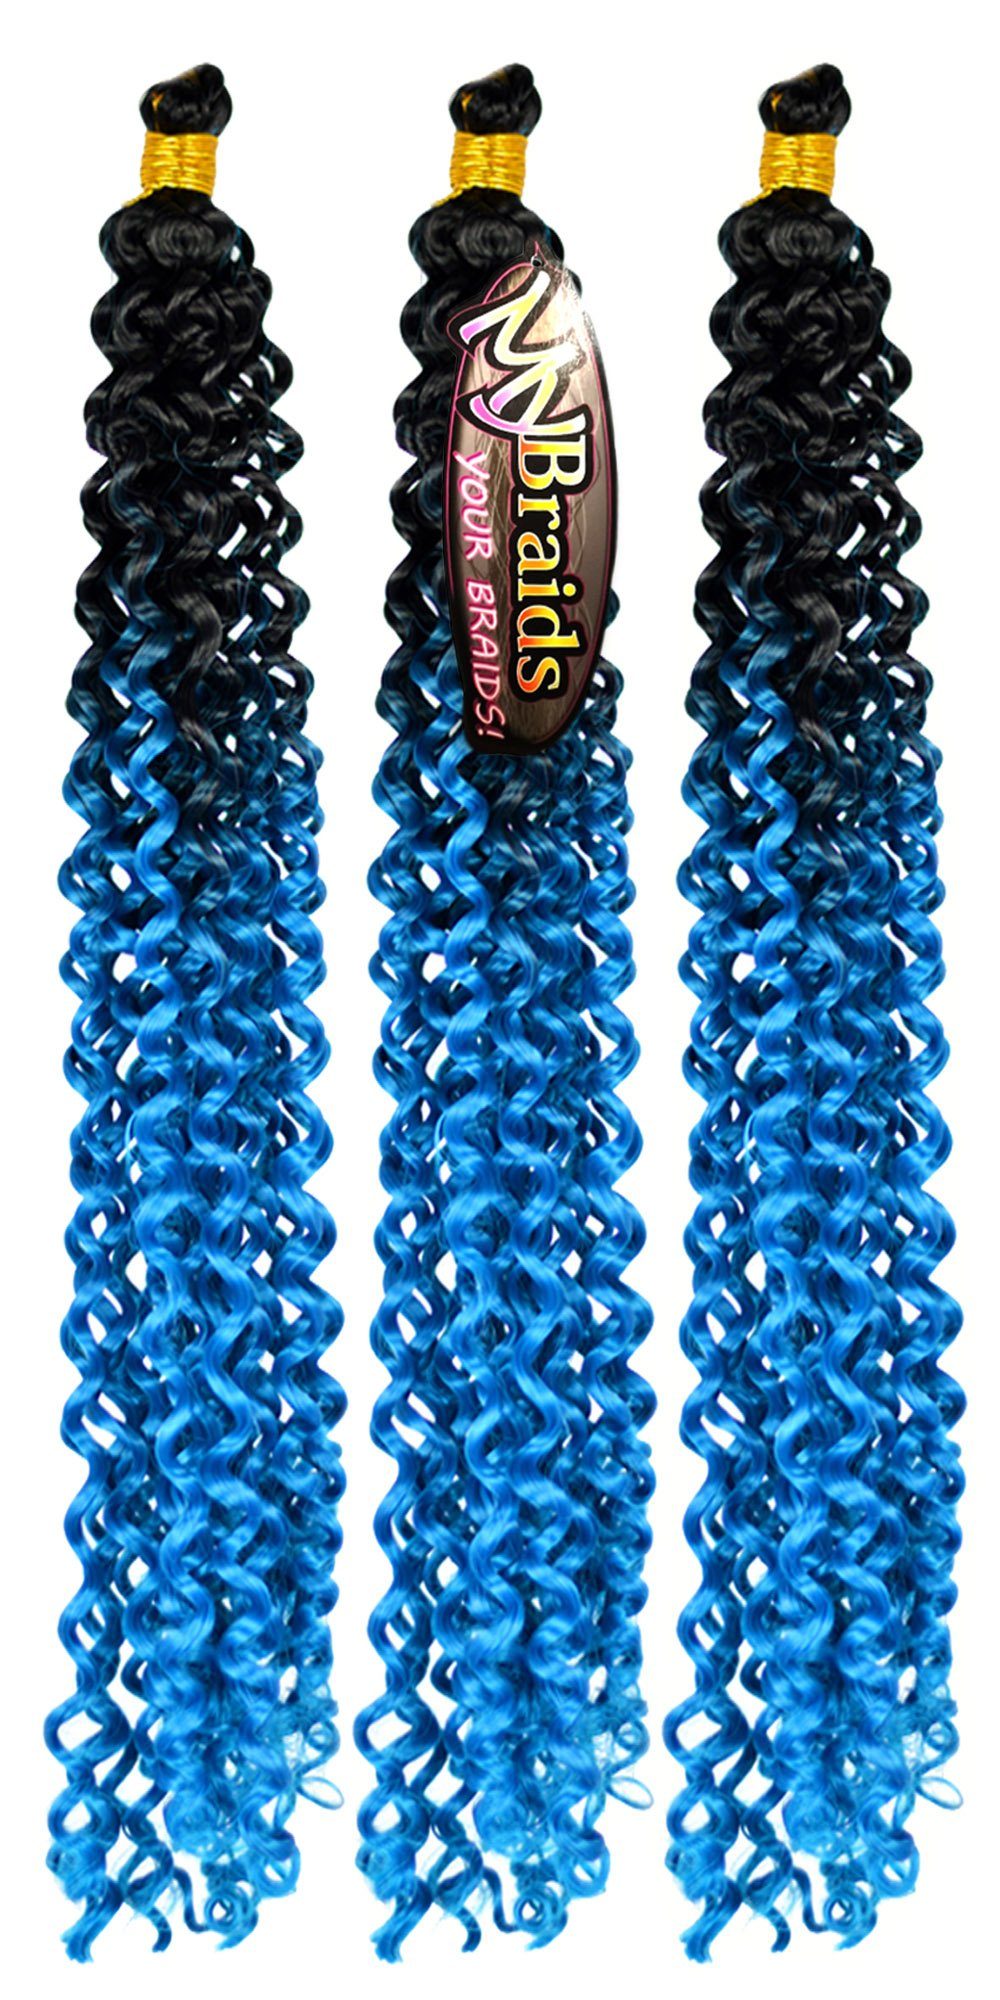 MyBraids YOUR BRAIDS! Kunsthaar-Extension Deep Schwarz-Enzianblau 24-WS Ombre Wave Crochet Flechthaar Braids Pack Zöpfe 3er Wellig